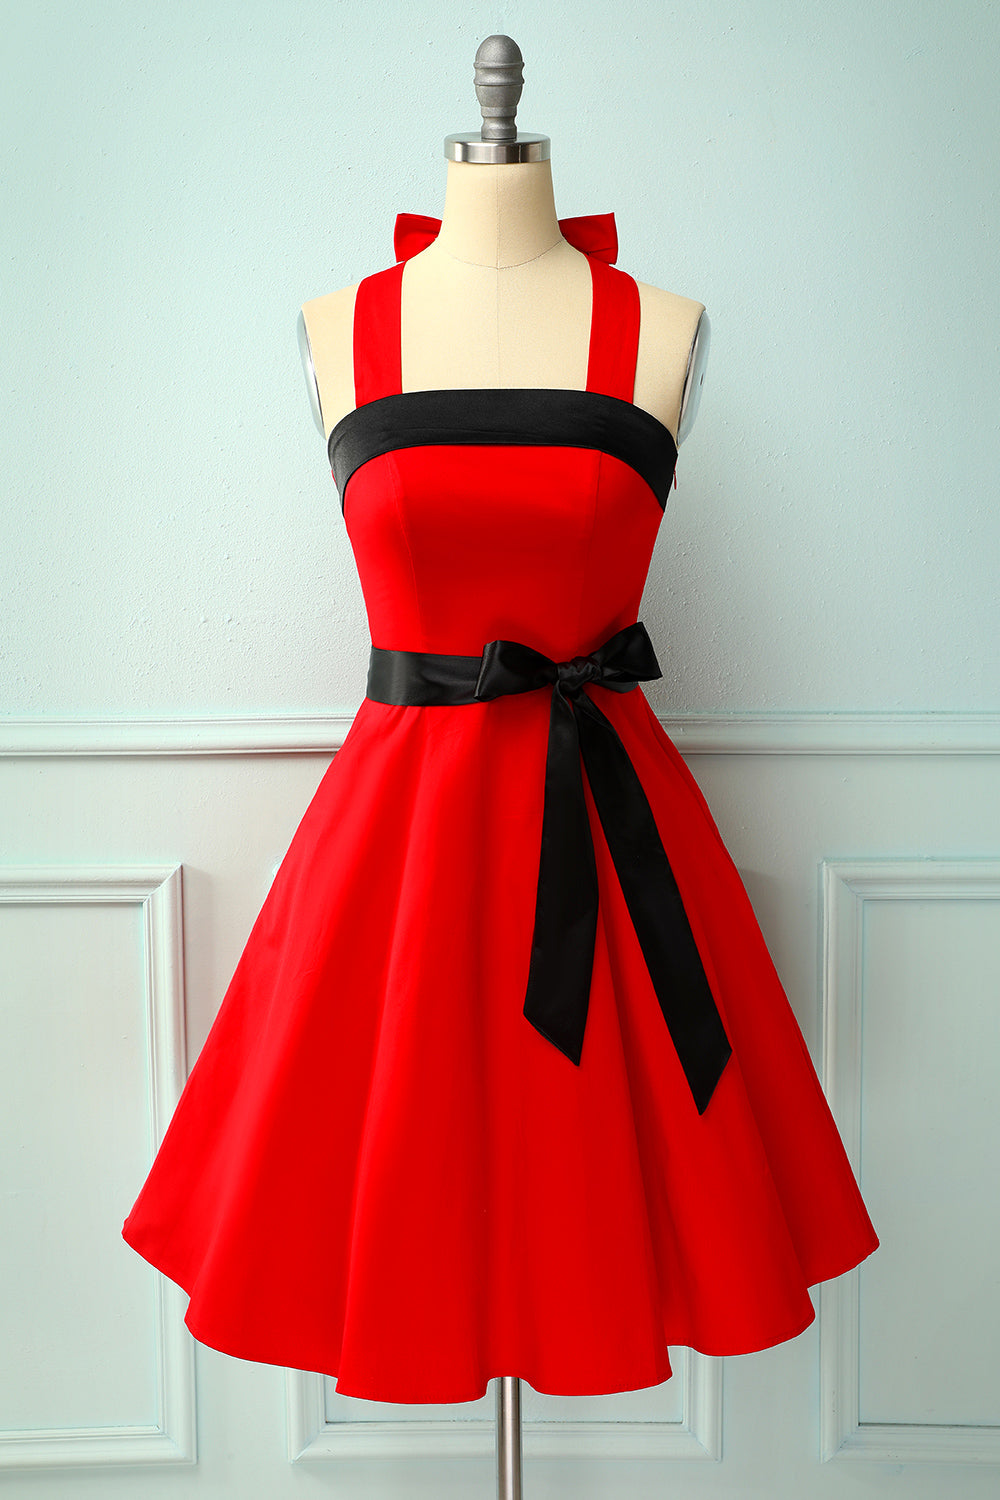 Red/Black Halter Pinup Dress